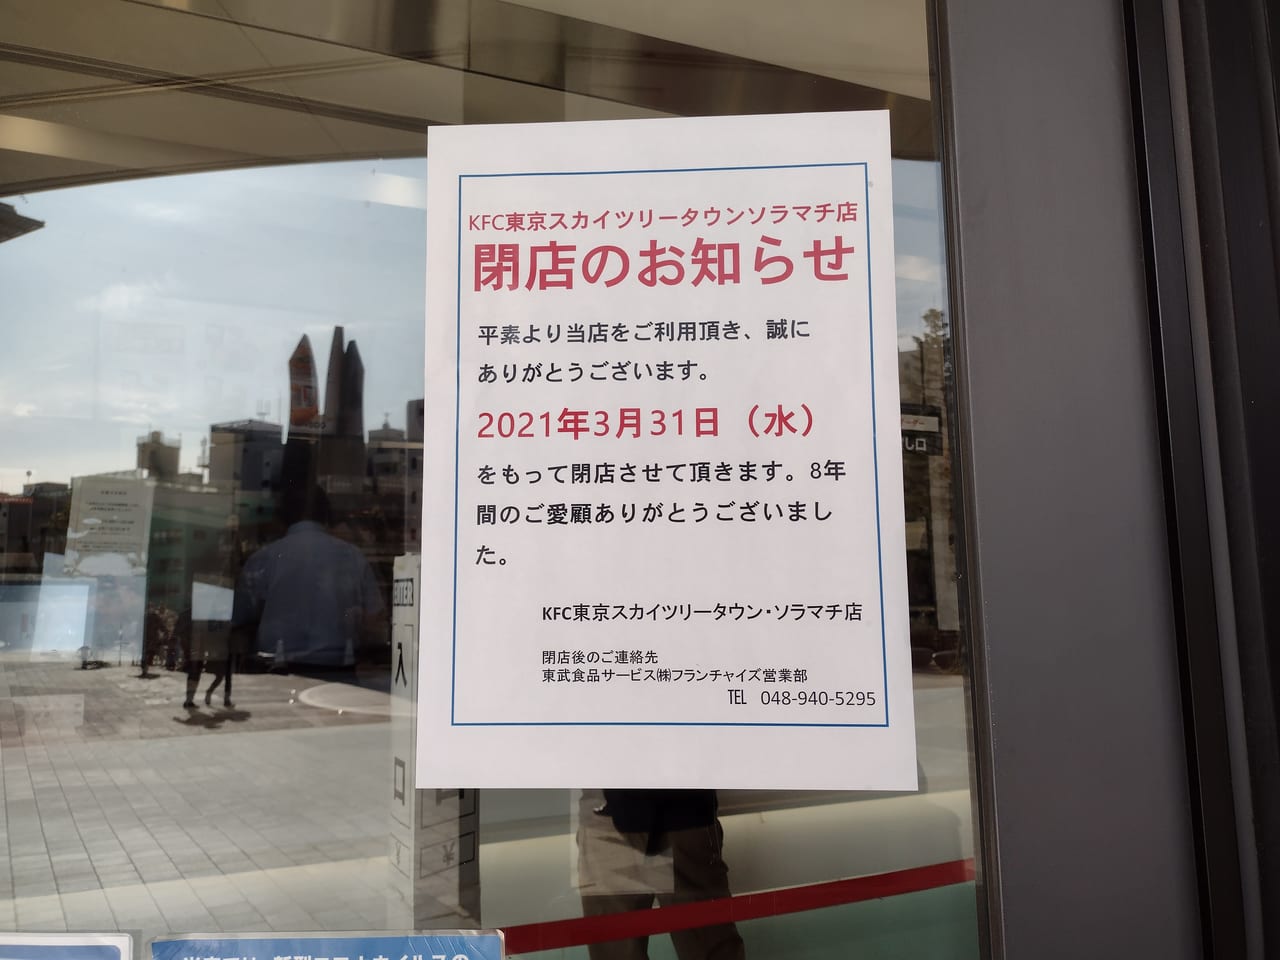 墨田区 悲報です 東京ソラマチの ケンタッキーフライドチキン が３月３１日をもって閉店することがわかりました 号外net 墨田区